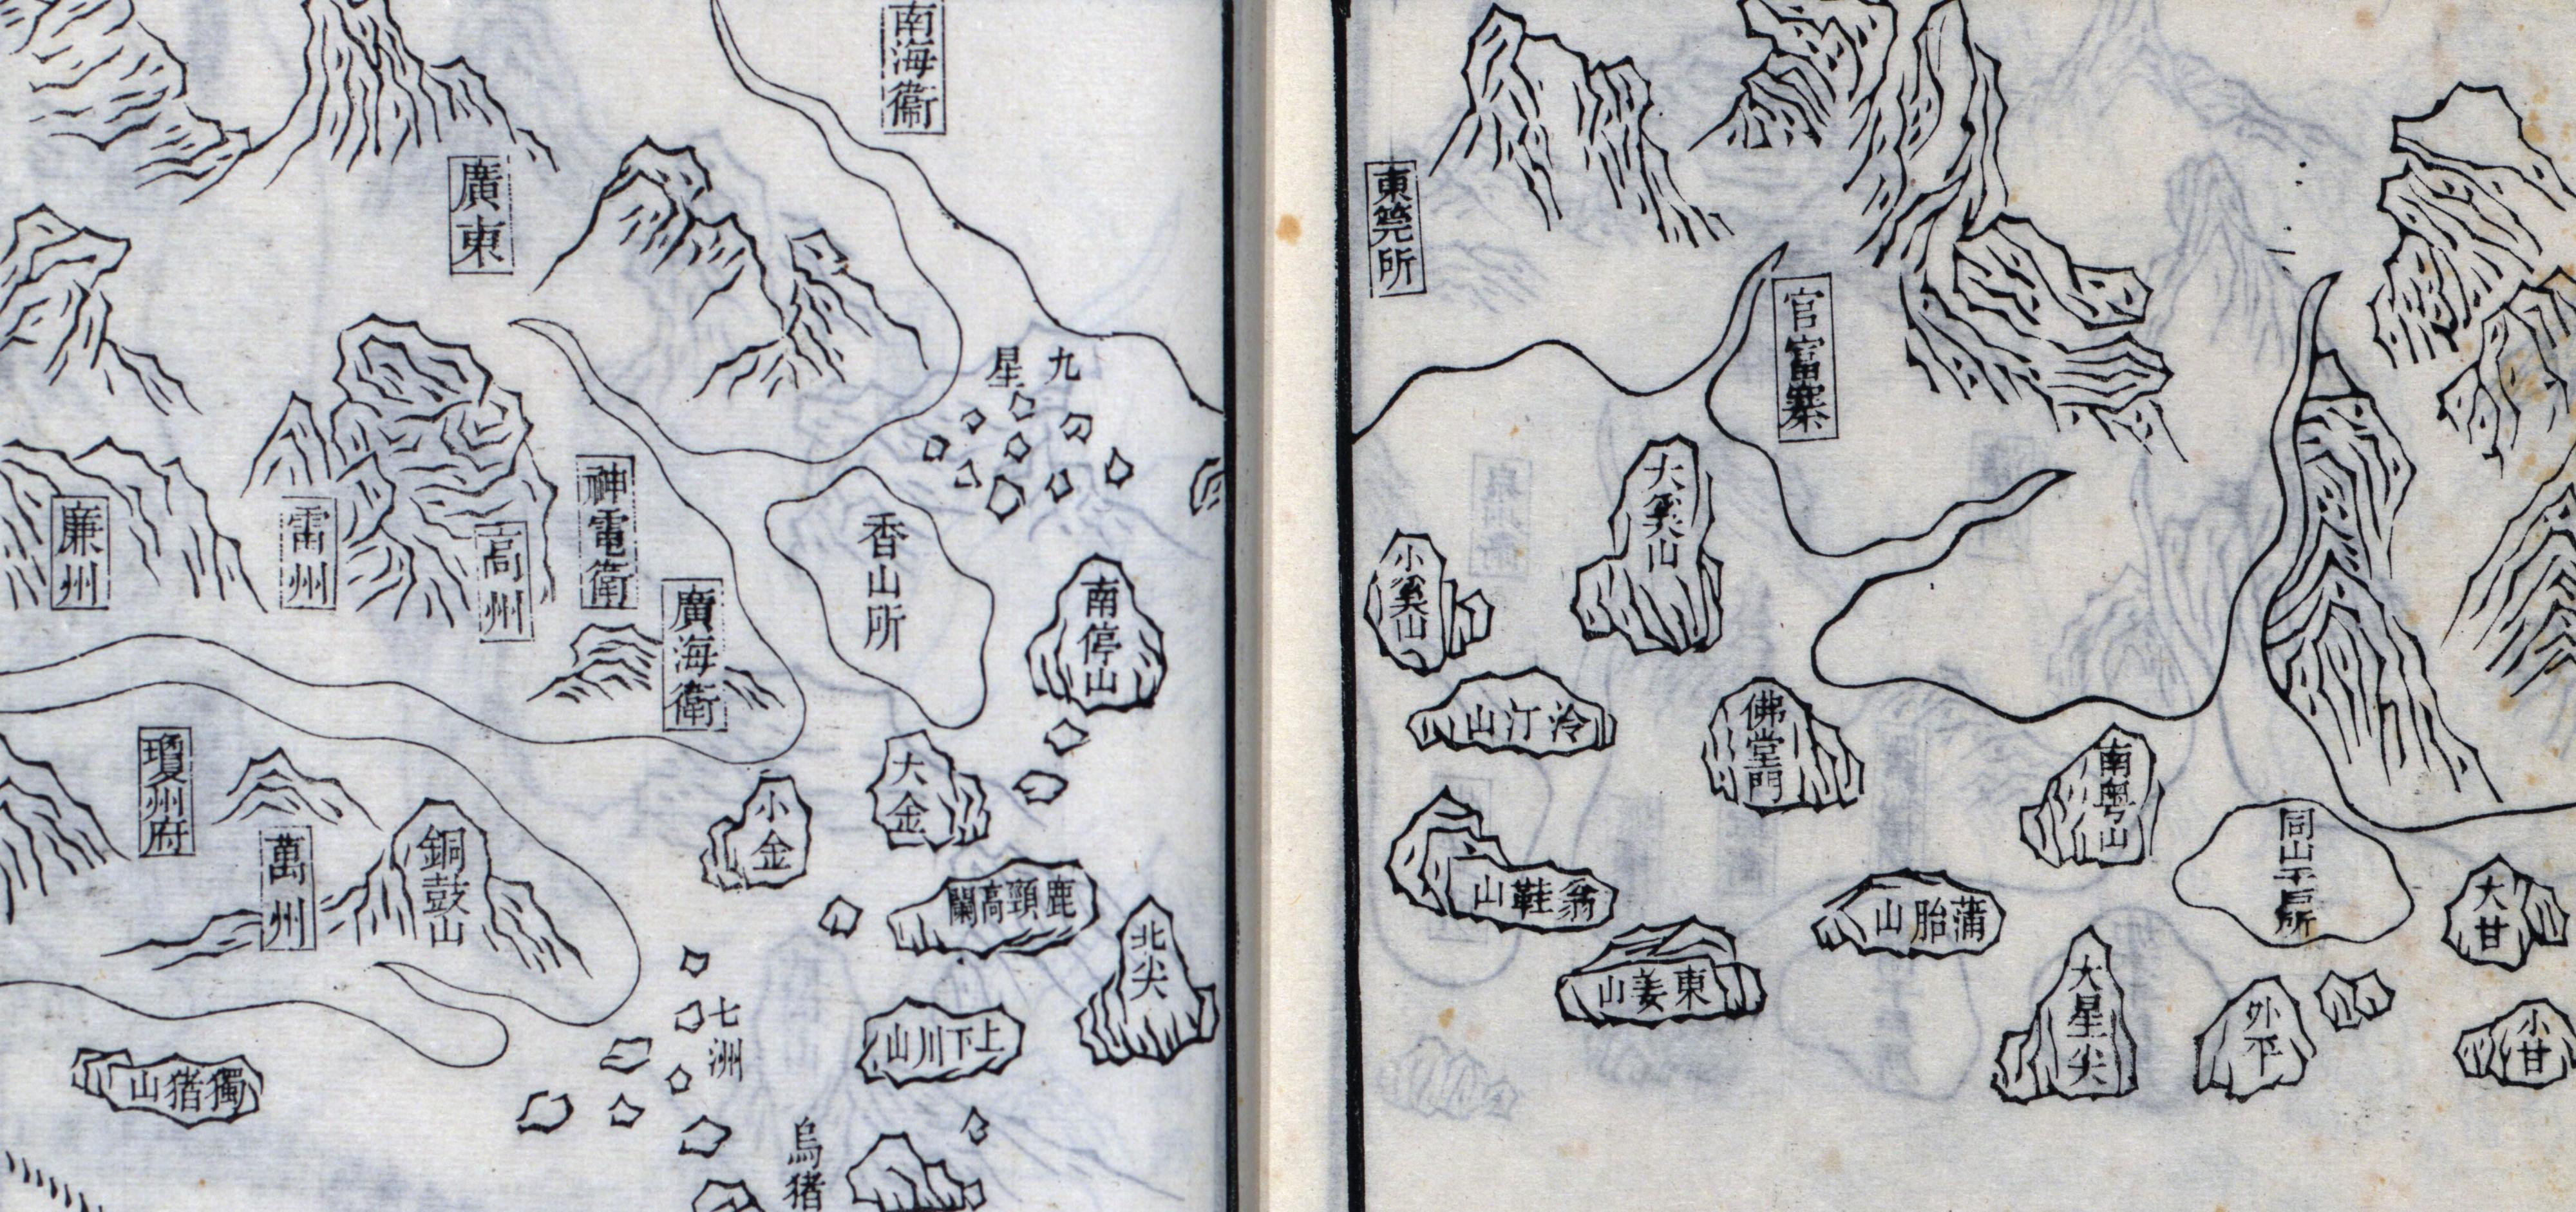 明天啟元年（1621），茅元儀編《武備志》卷二百四十《鄭和航海圖卷》中，將大嶼山標記為大奚山。